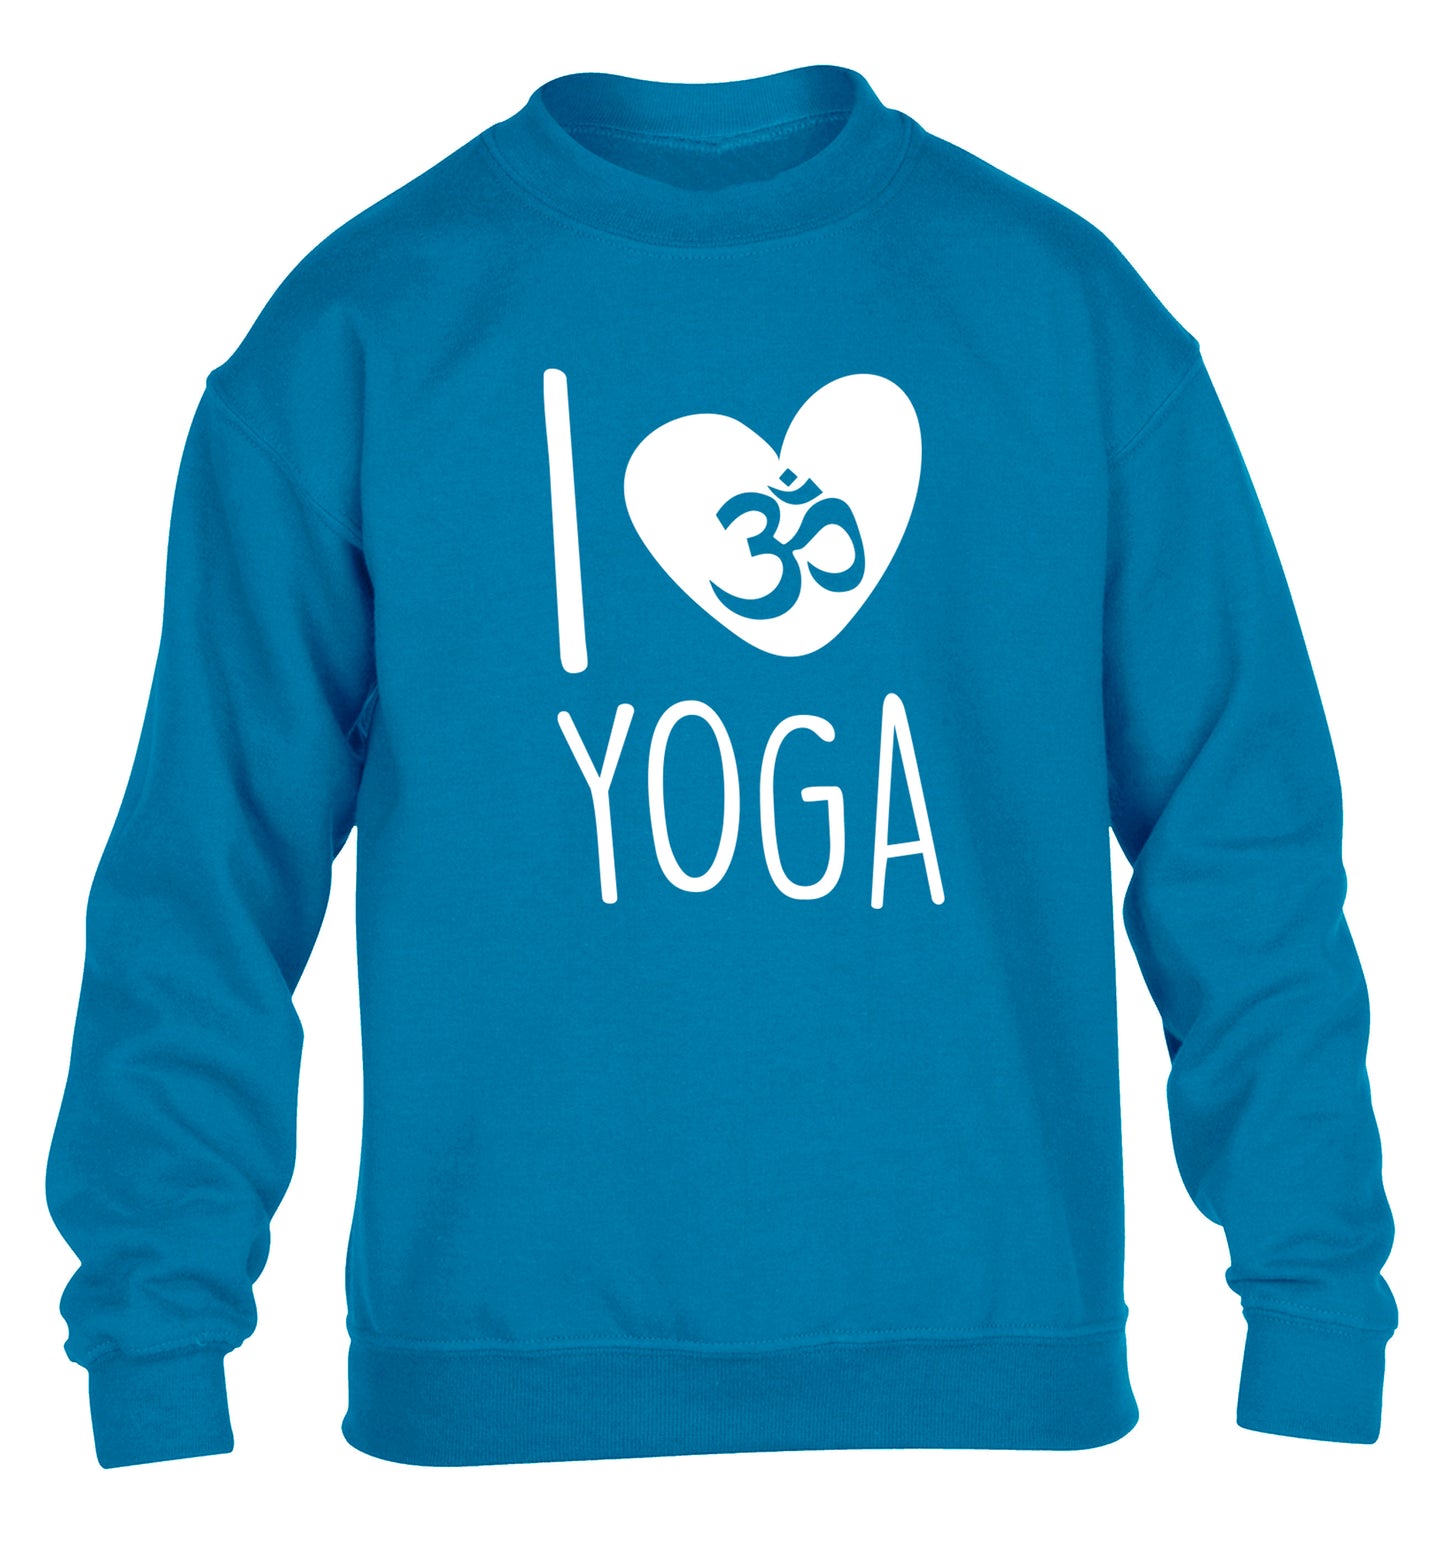 I love yoga children's blue sweater 12-13 Years